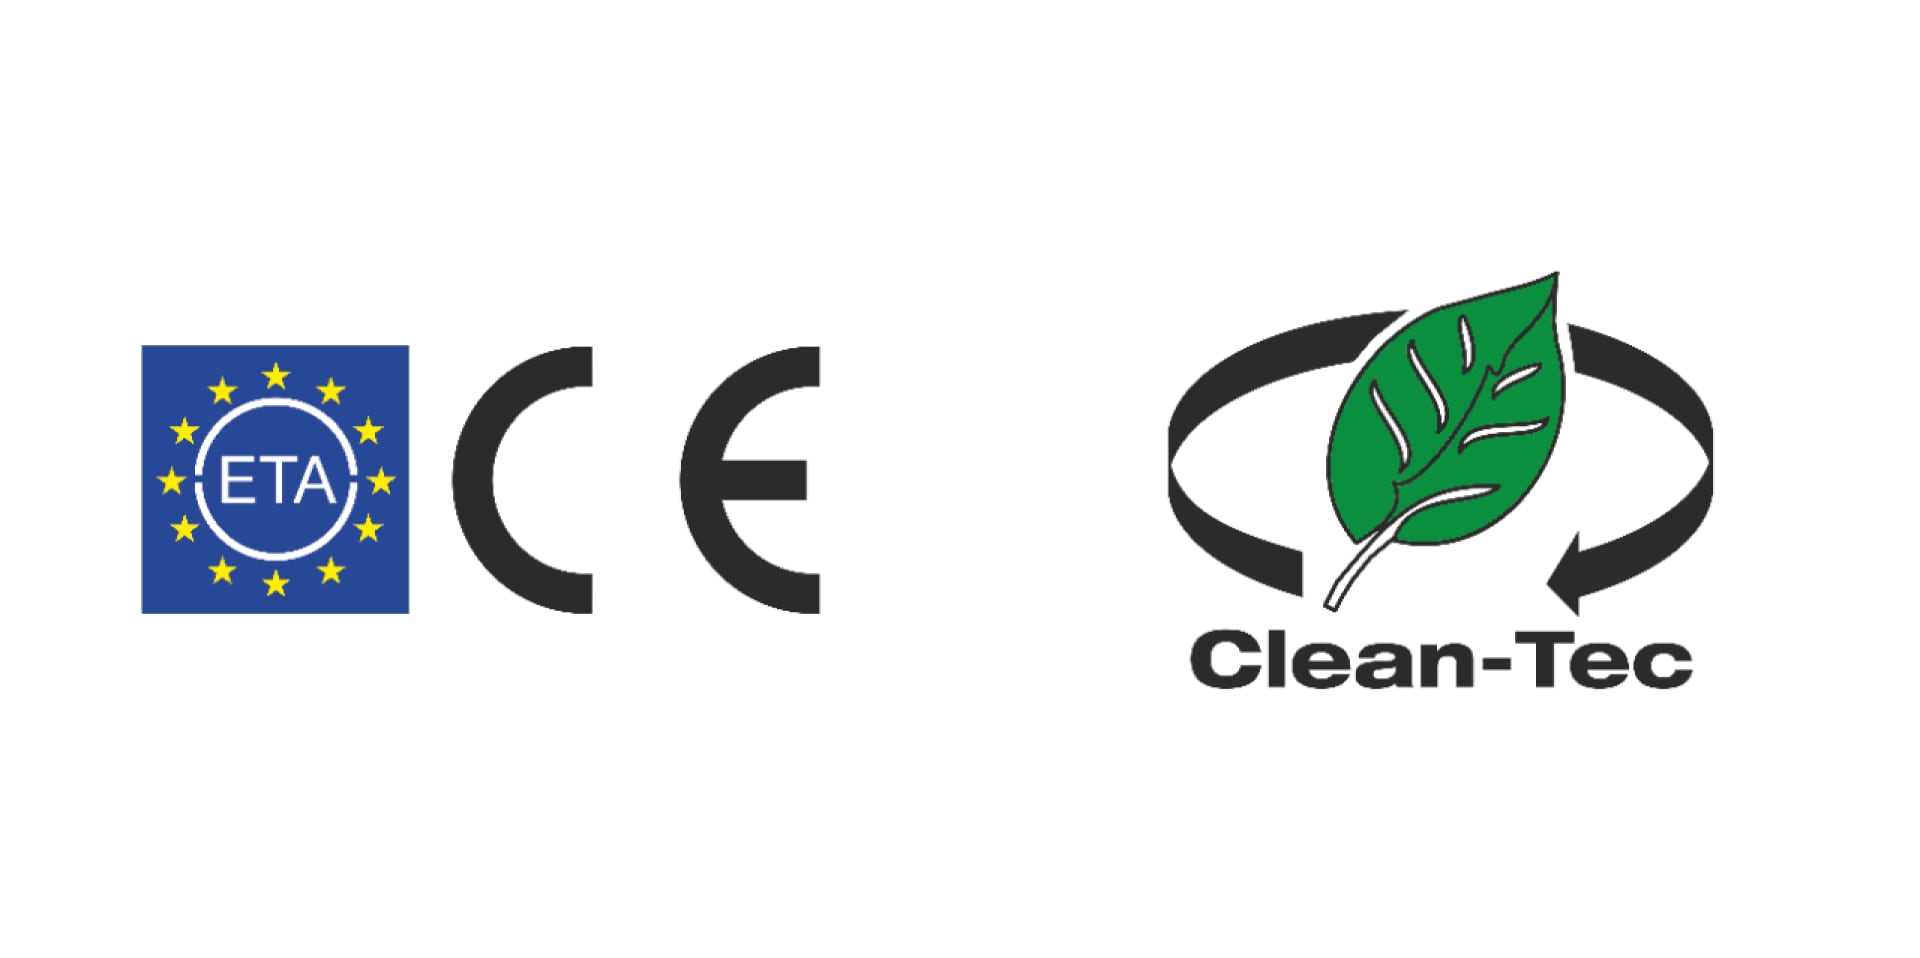 ETE et homologation CE, plus technologie Clean-Tec Hilti